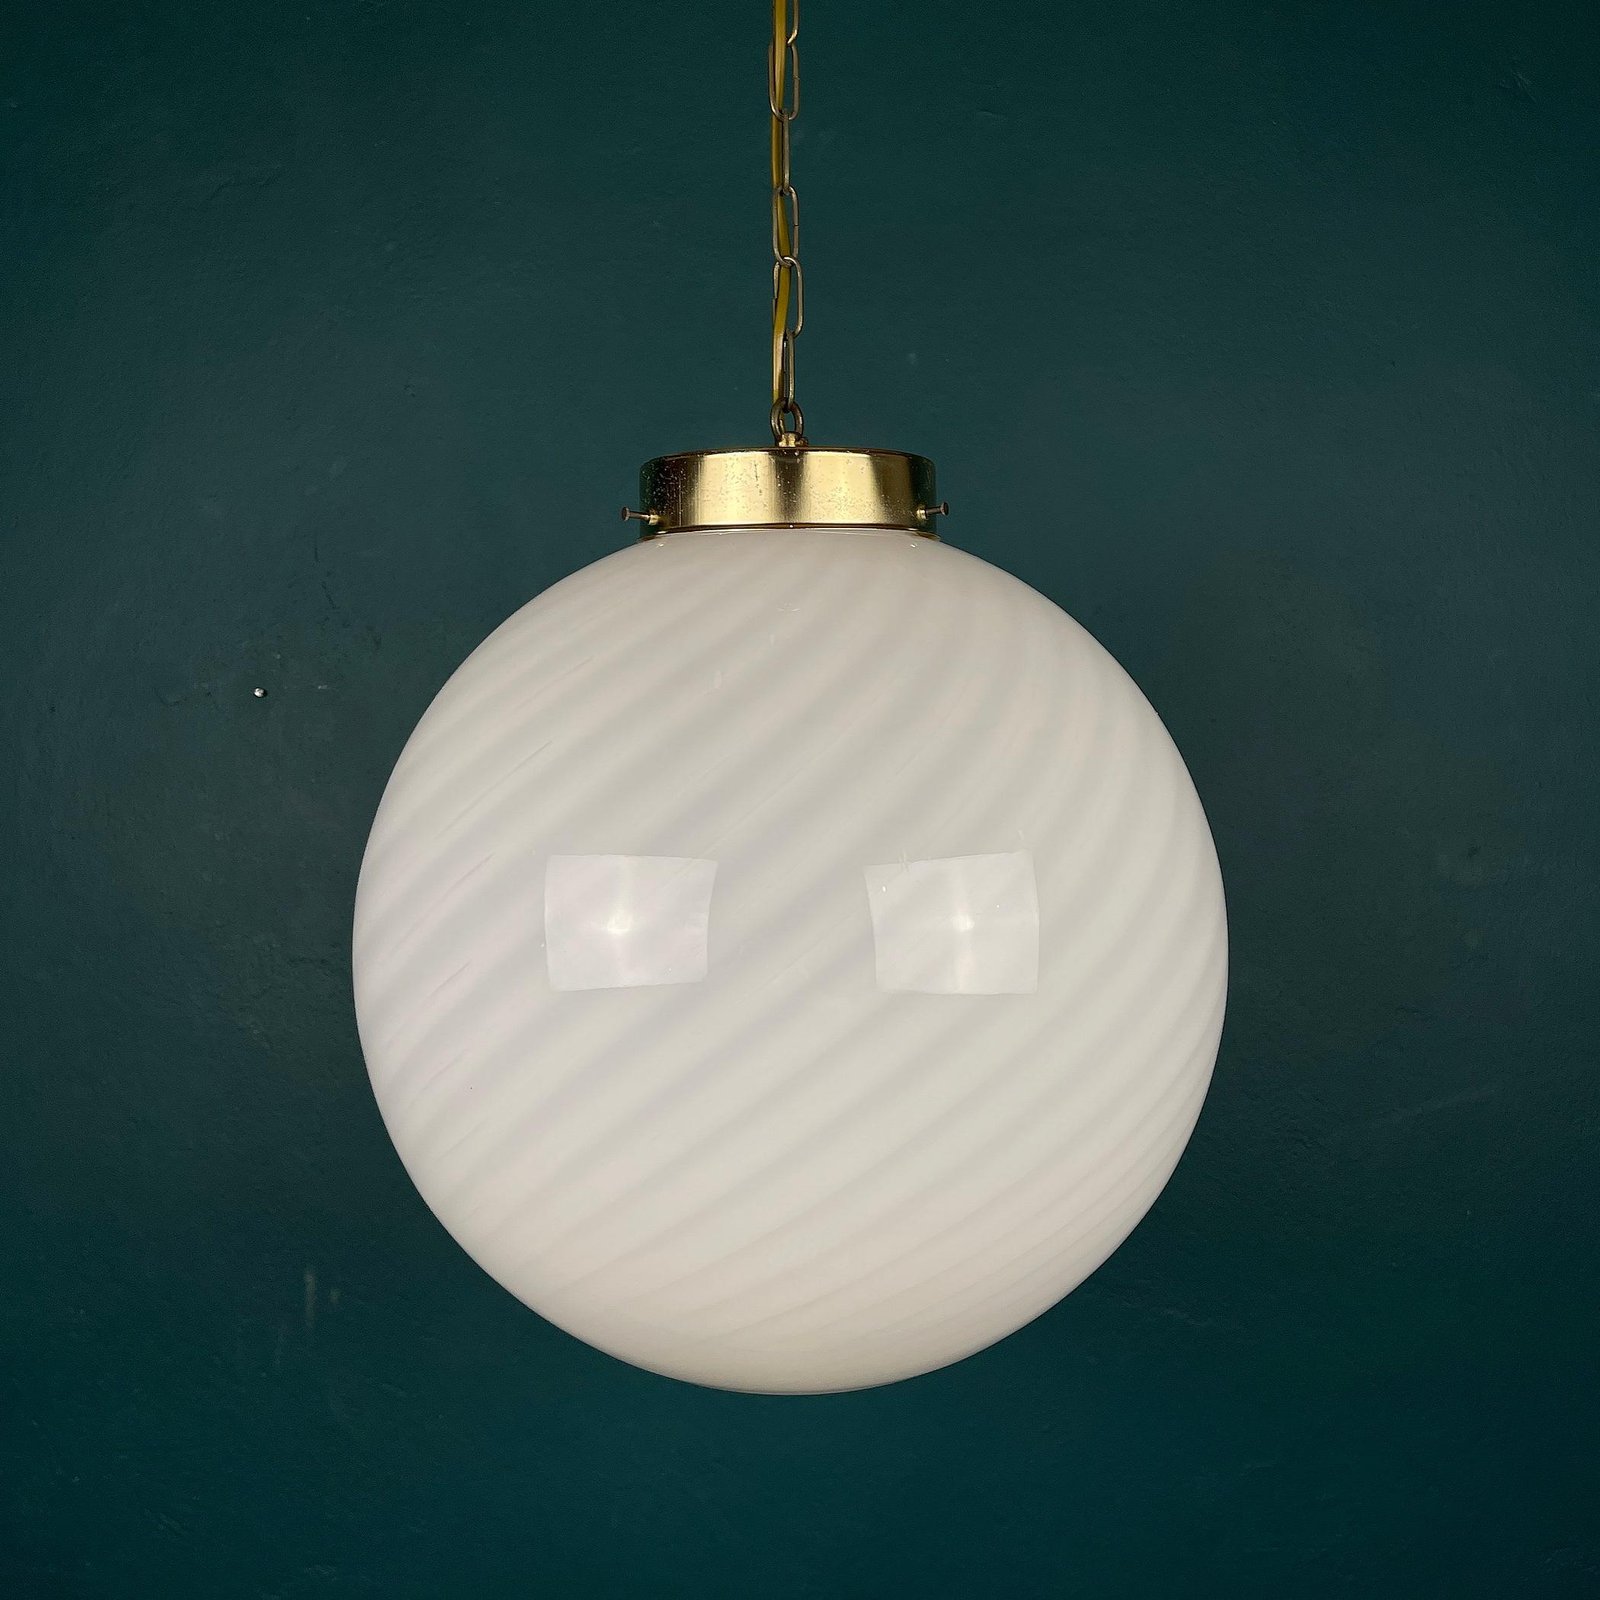 Classic large swirl murano pendant lamp Vetri Murano Italy 1970s Italian mid-century modern lighting